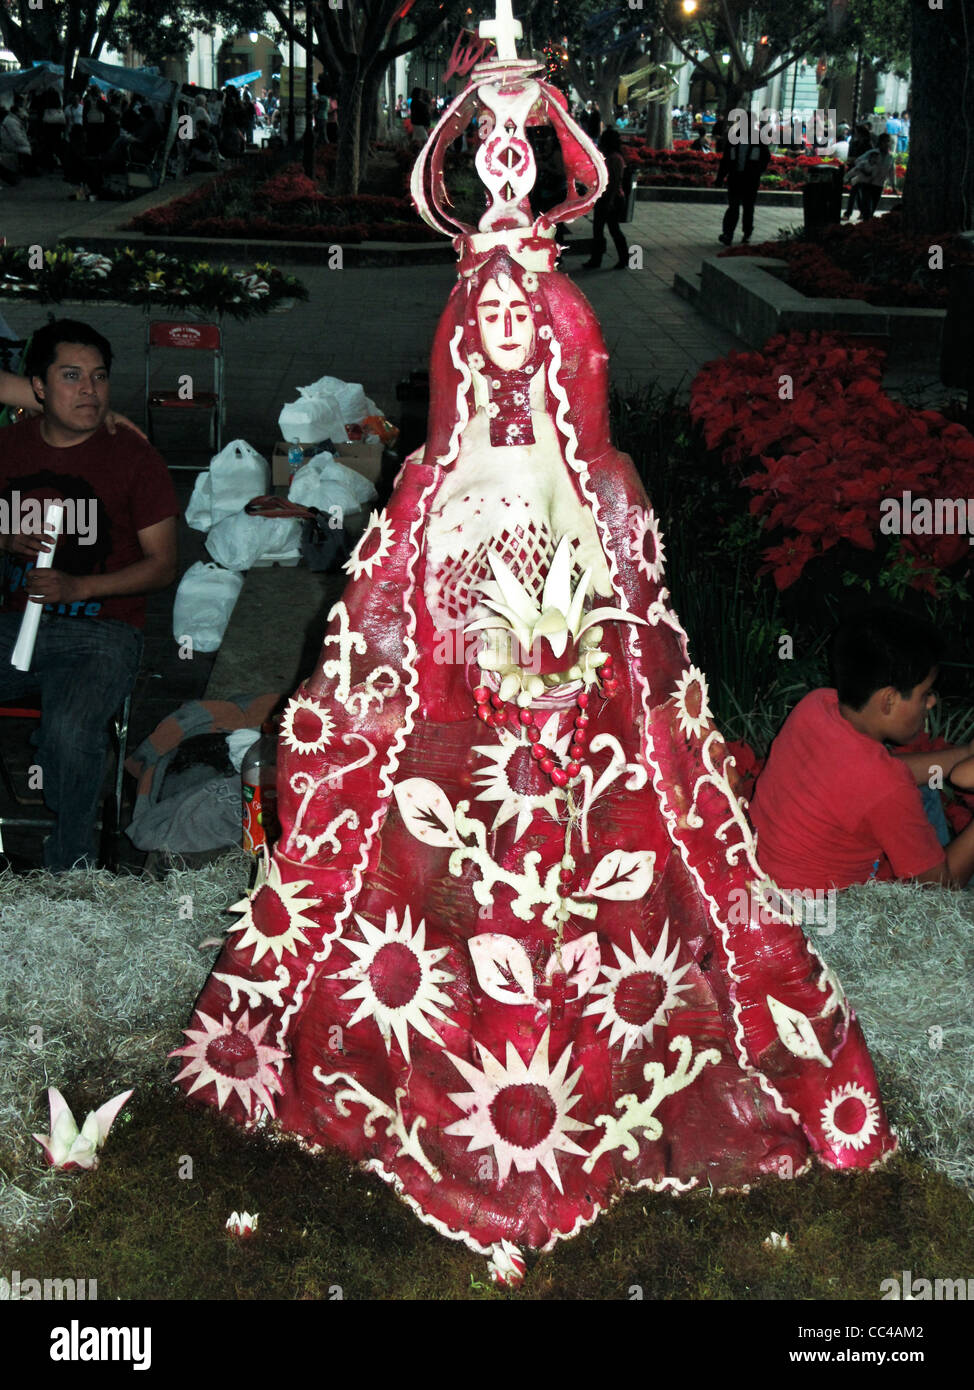 zarte reizvolle Volkskunst Skulptur der Jungfrau von Einsamkeit aus Radieschen für Noche de Rabanos Festival in Oaxaca Zocalo geschnitzt Stockfoto